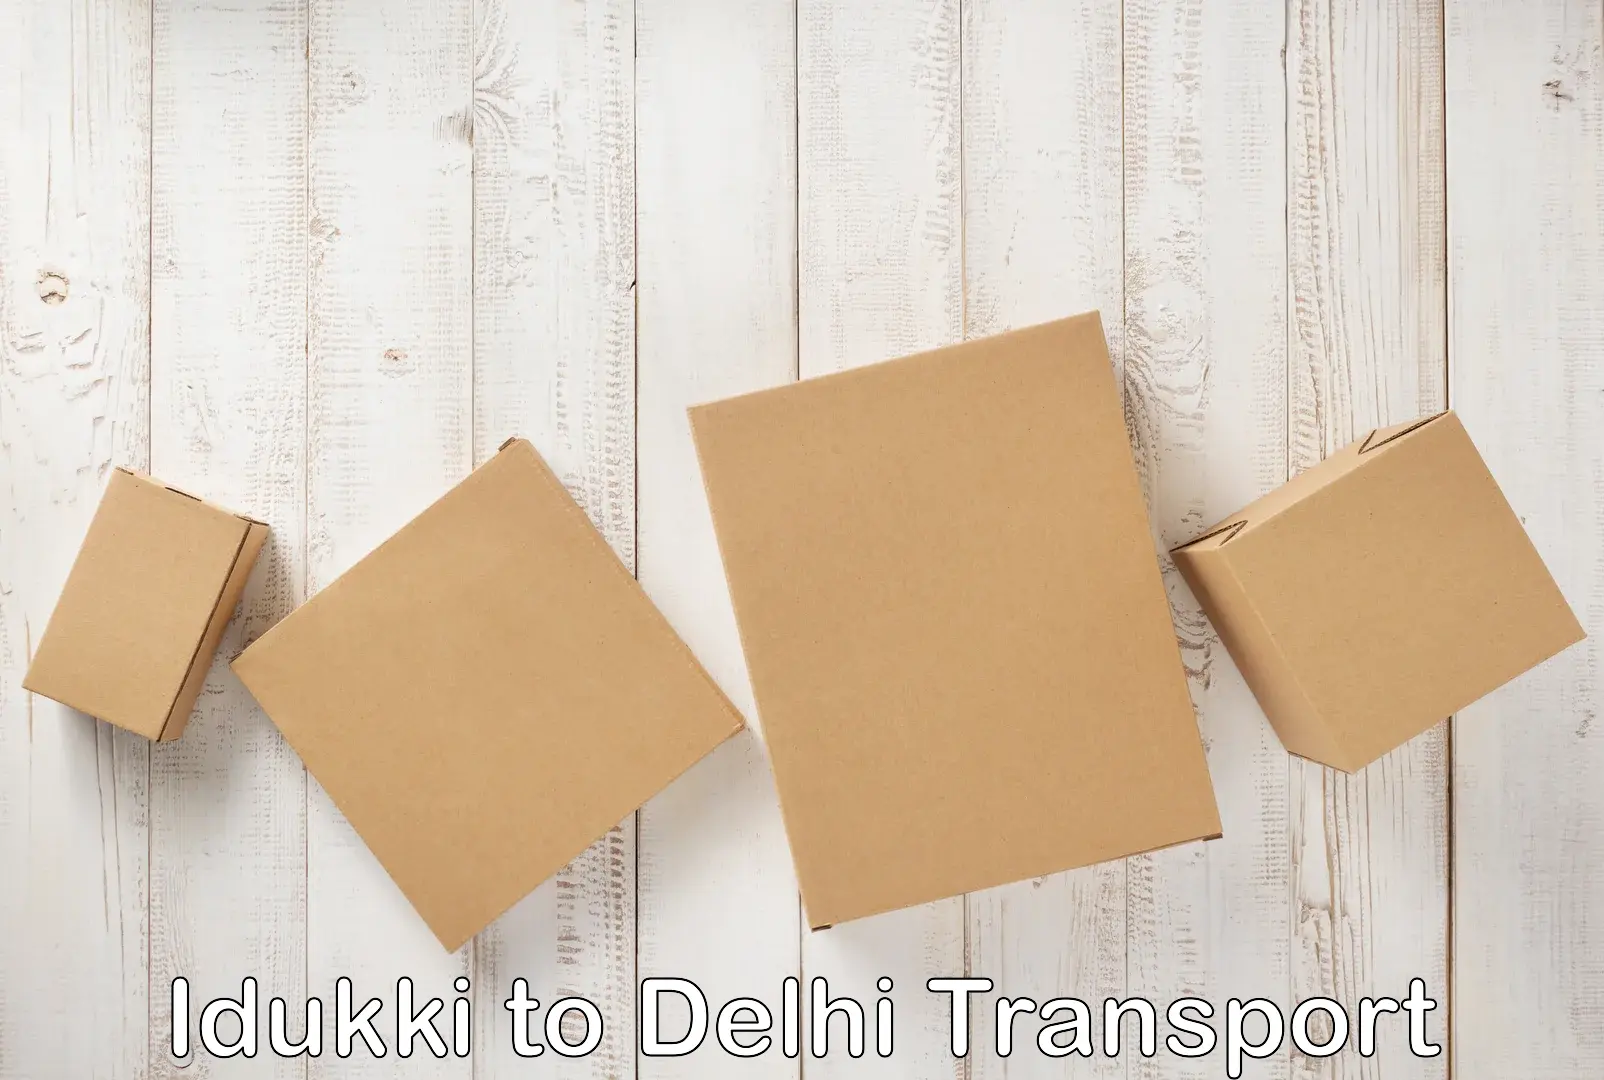 Two wheeler parcel service in Idukki to Delhi